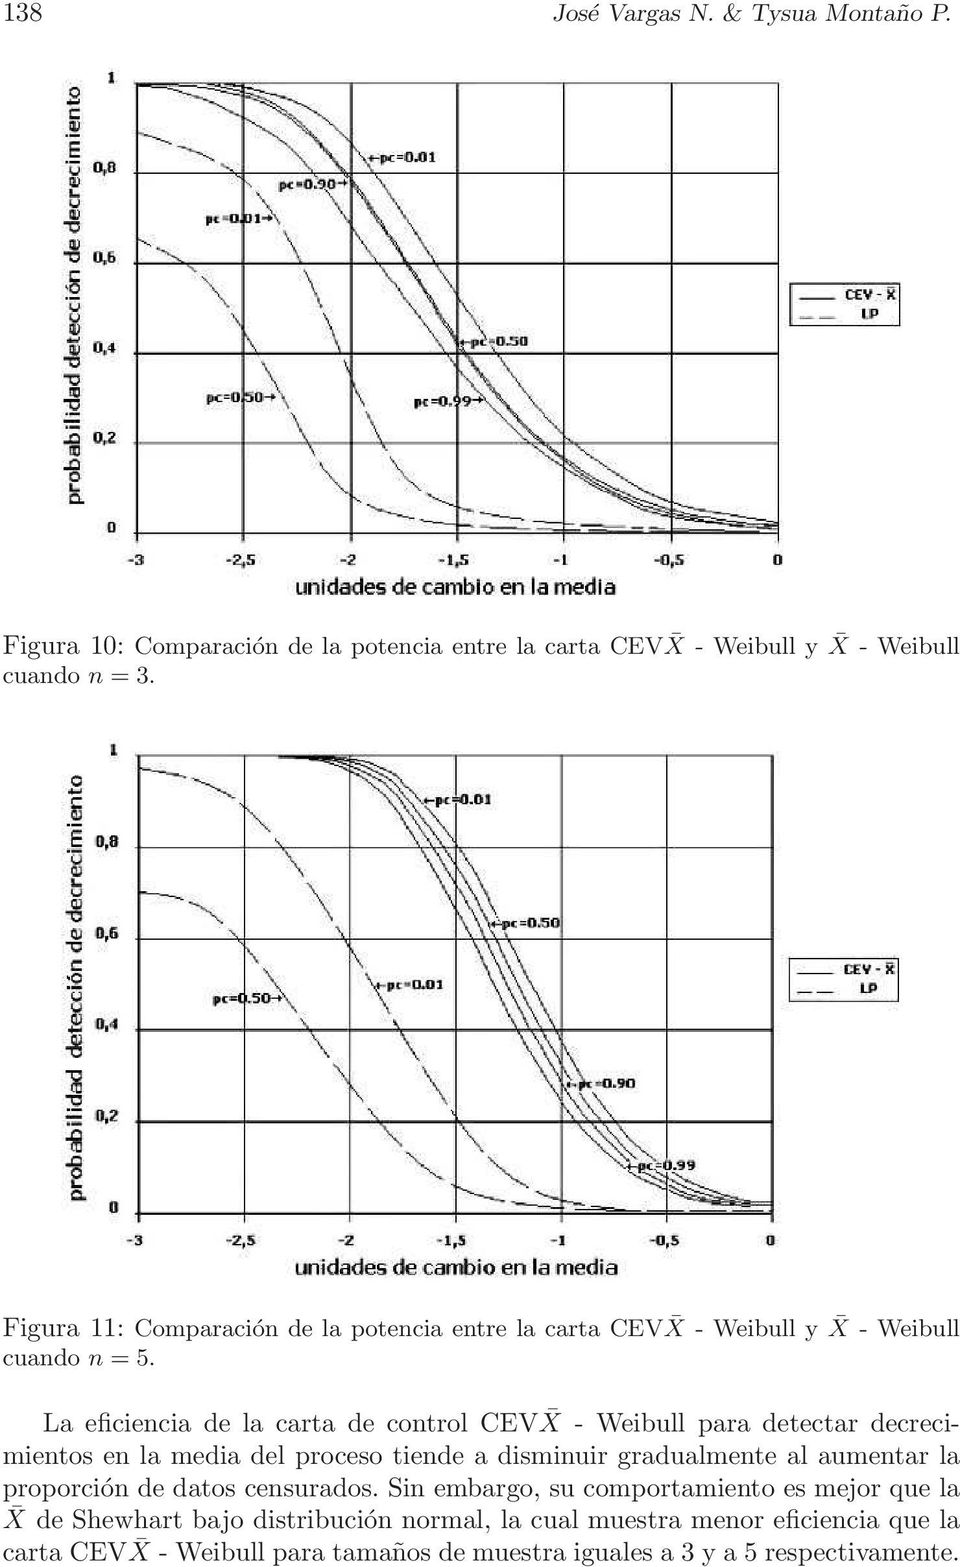 La eficiencia de la carta de control CEV X - Weibull para detectar decrecimientos en la media del proceso tiende a disminuir gradualmente al aumentar la